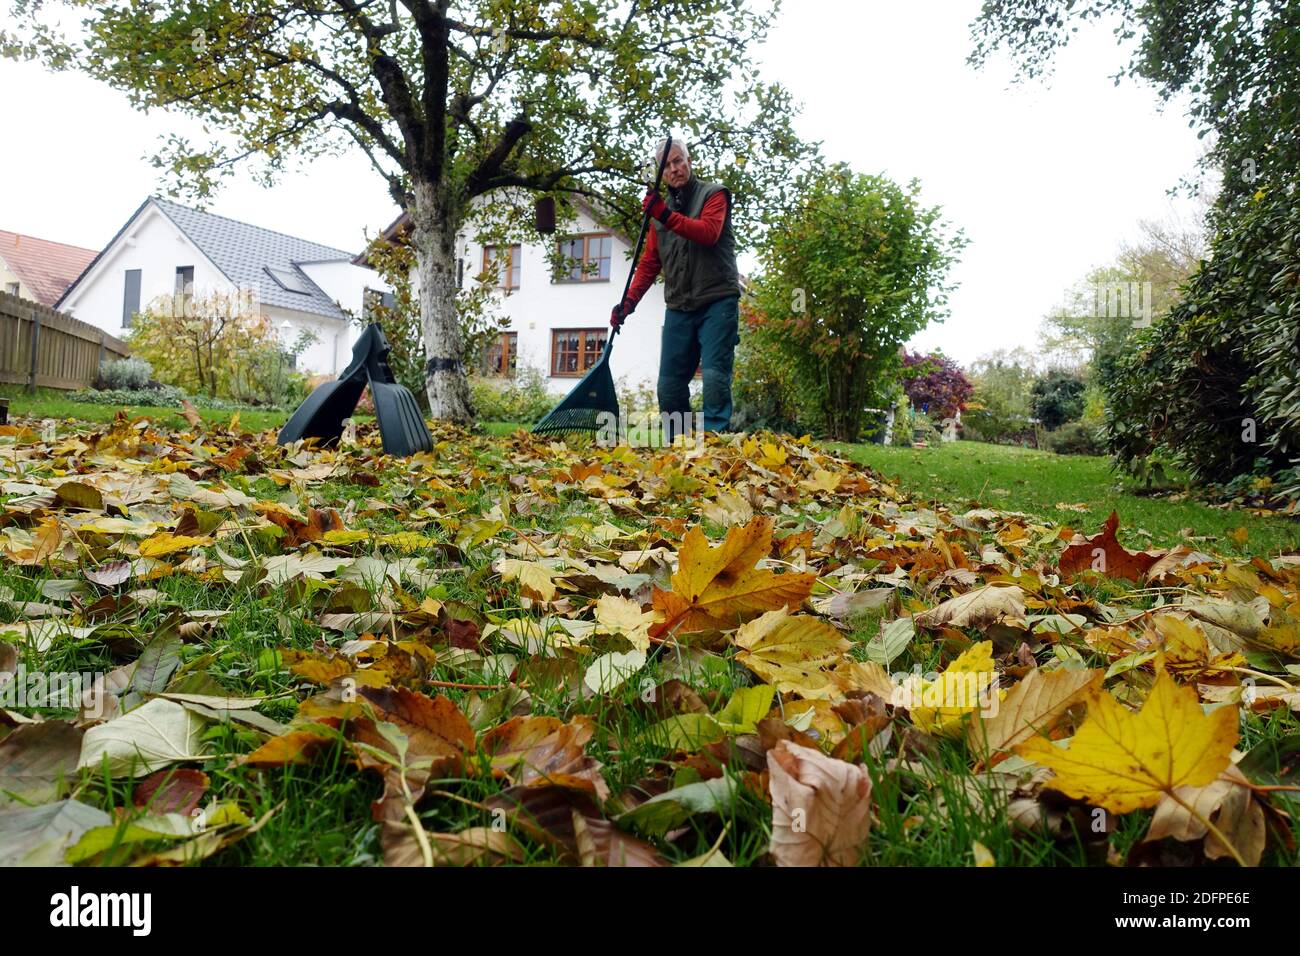 Herbstlaub auf dem Rasen vor einem Einfamilienhaus im Landhaus-Stil, Weilerswist, Nordrhein-Westfalen, Deutschland Stock Photo